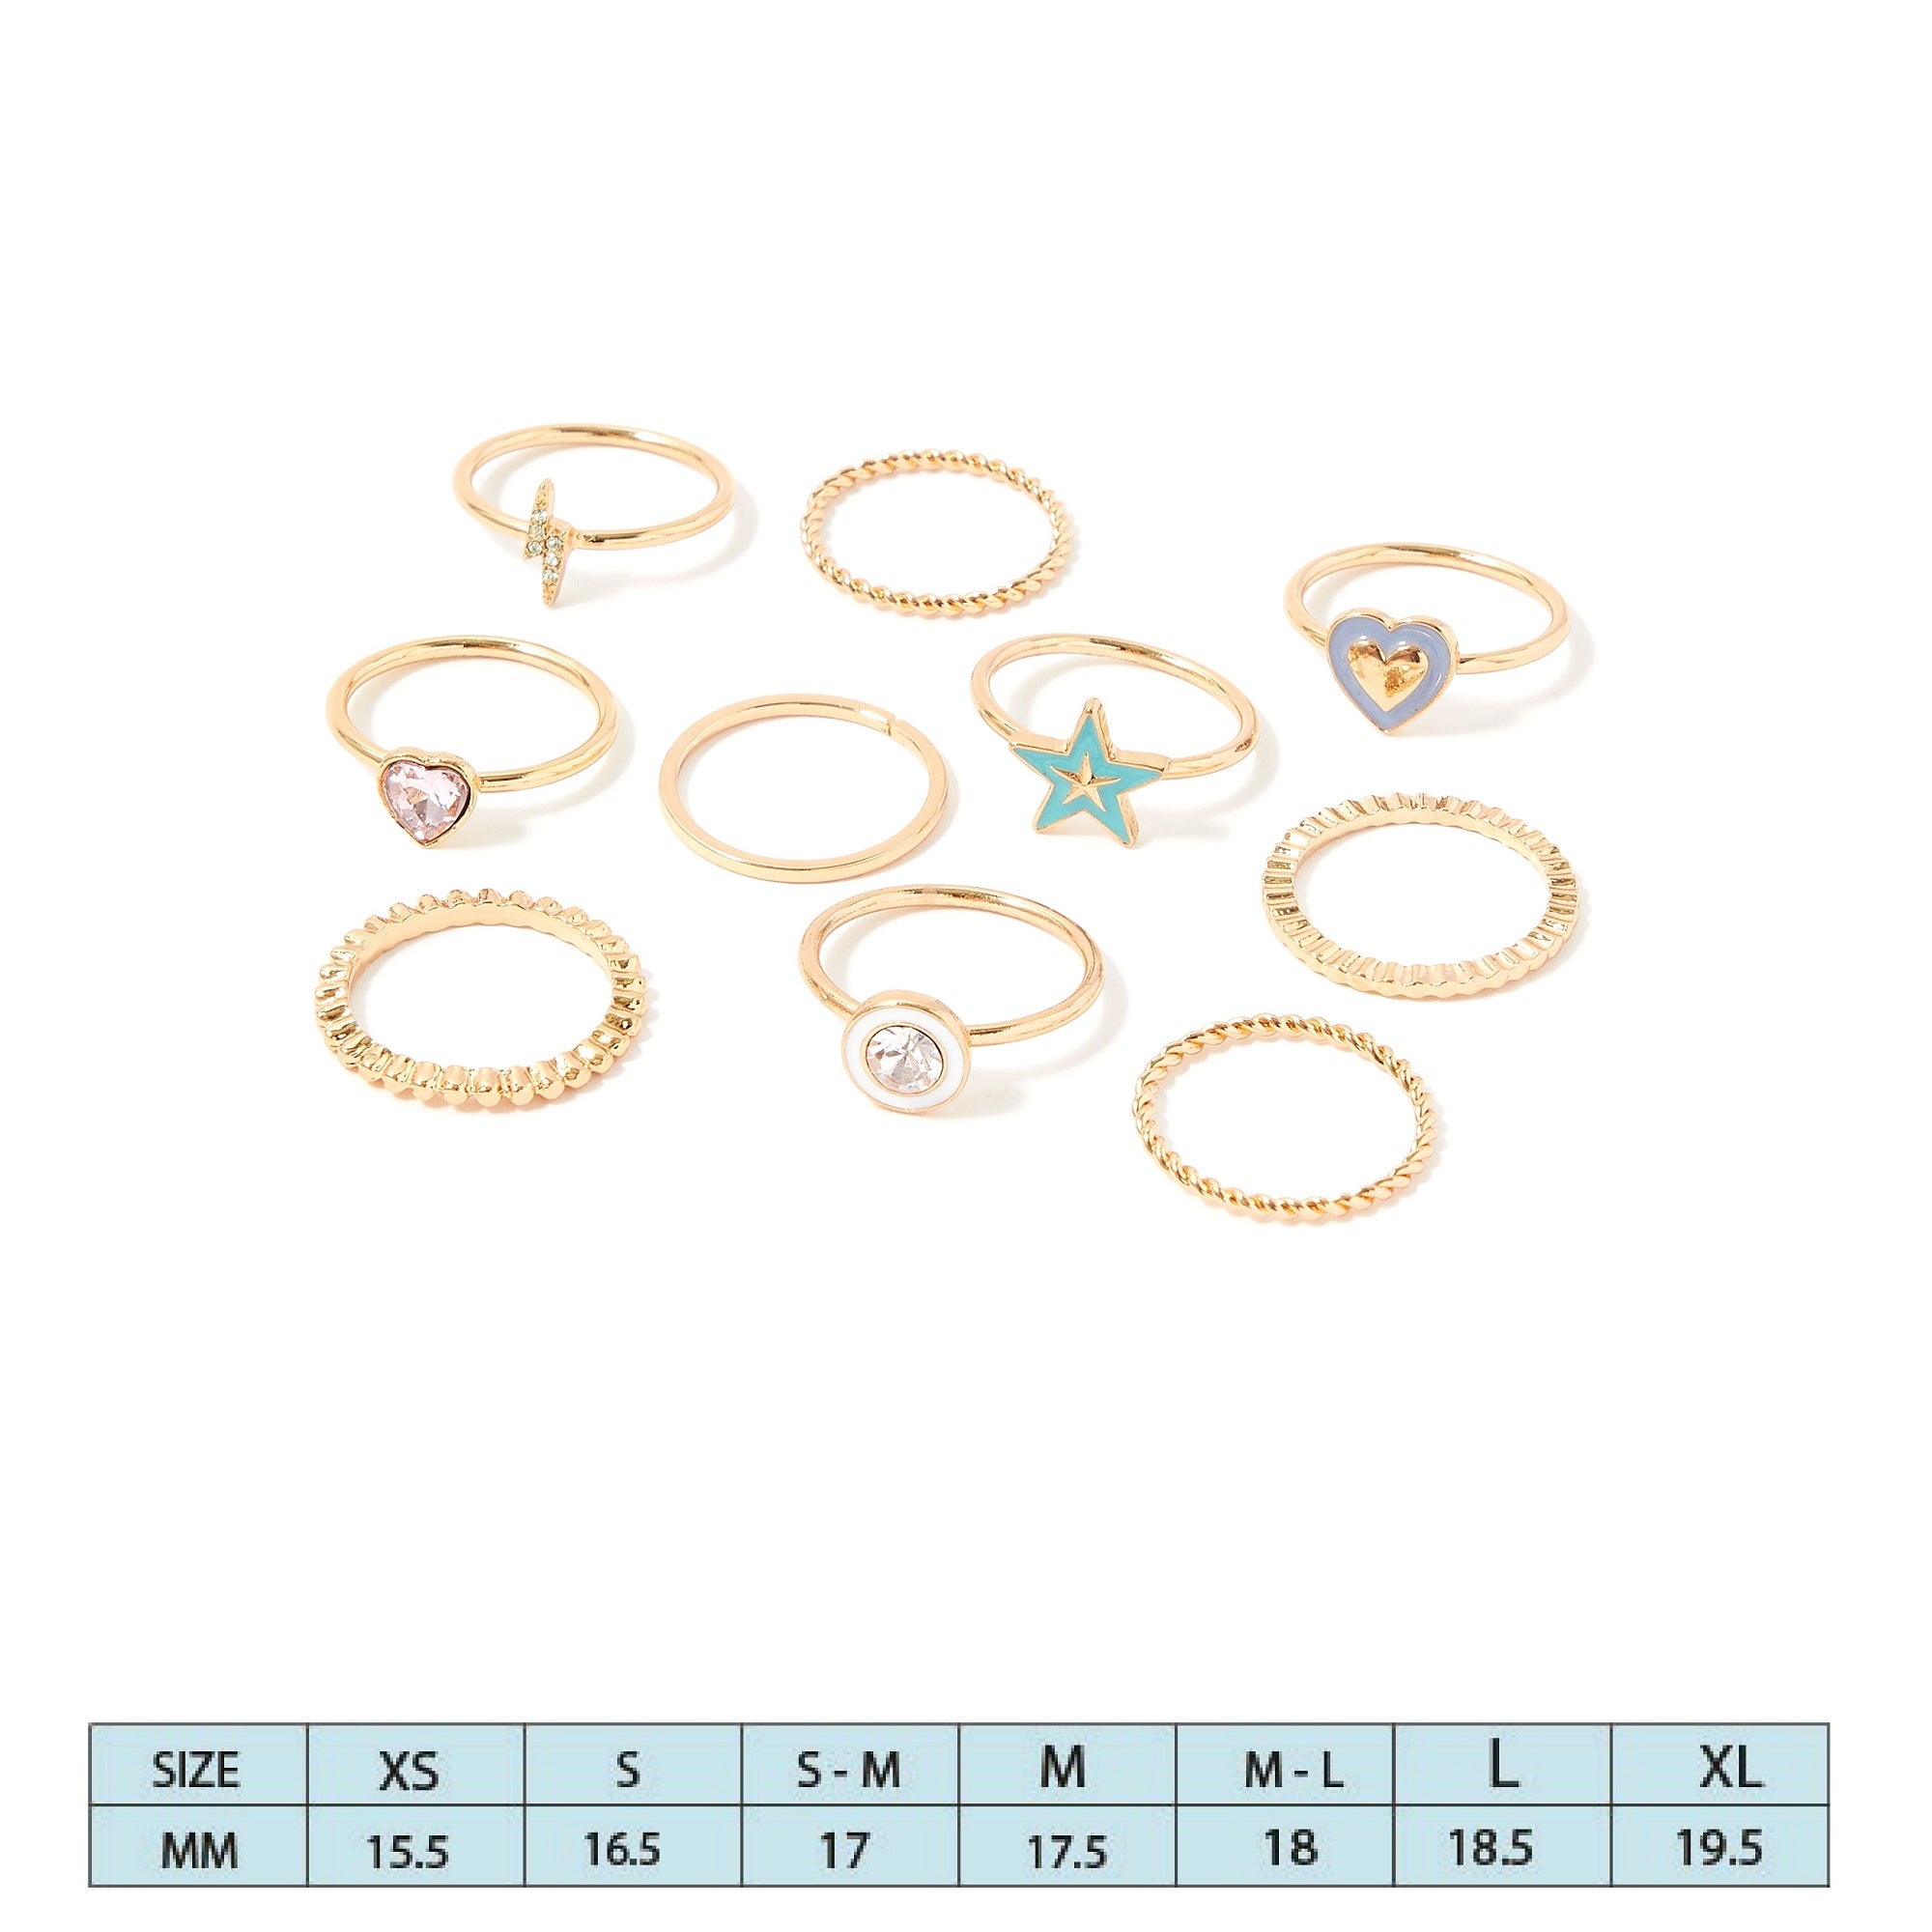 Accessorize London Women's Pastel Pop Set of 10 Enamel Rings Pack-Small